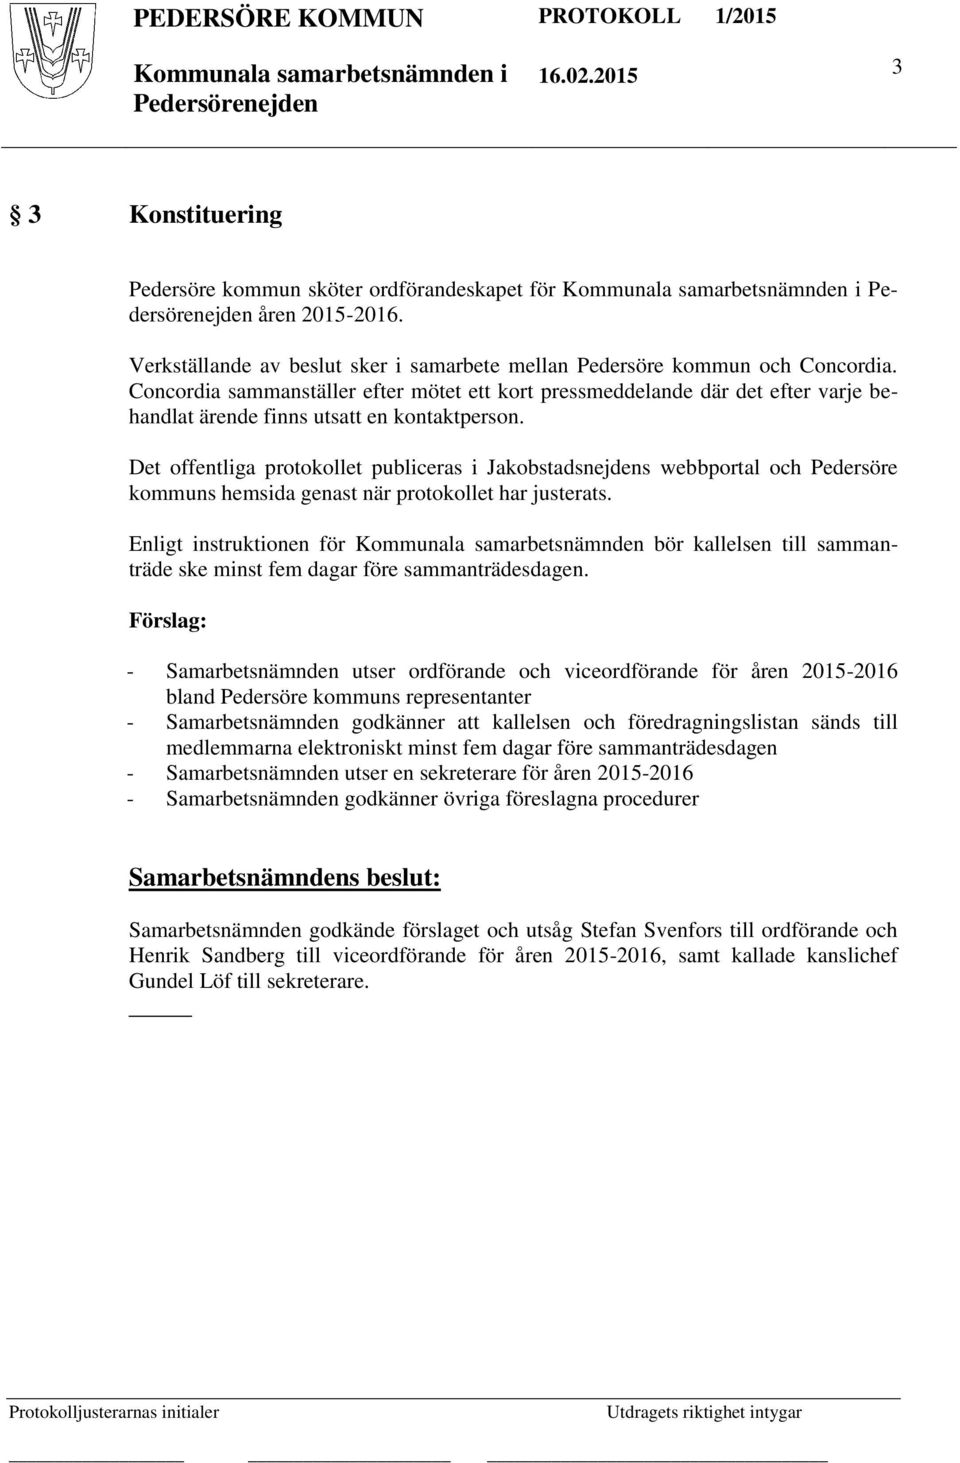 Det offentliga protokollet publiceras i Jakobstadsnejdens webbportal och Pedersöre kommuns hemsida genast när protokollet har justerats.